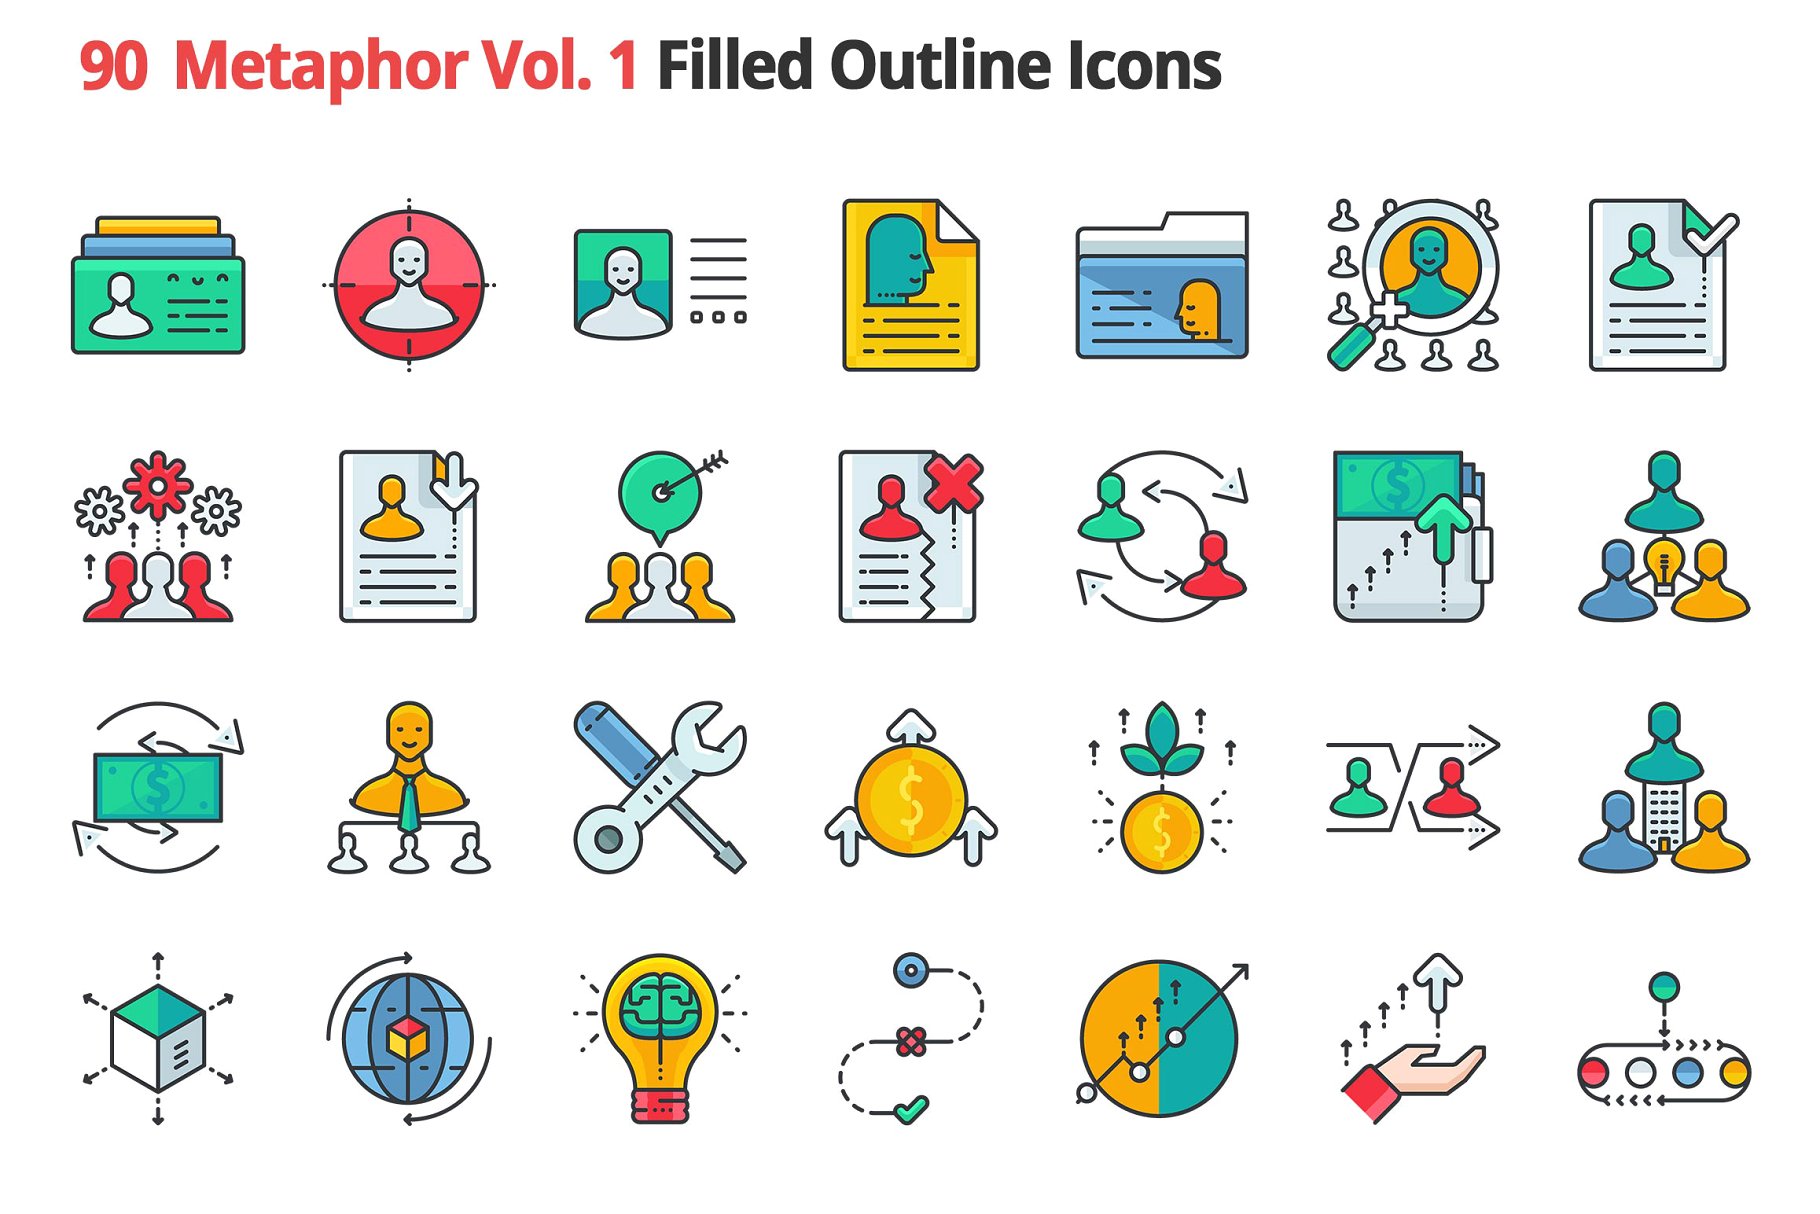 90个哲学主题隐喻填充小图标素材 90 Metaphors Vol. 1 Filled Icons插图(2)